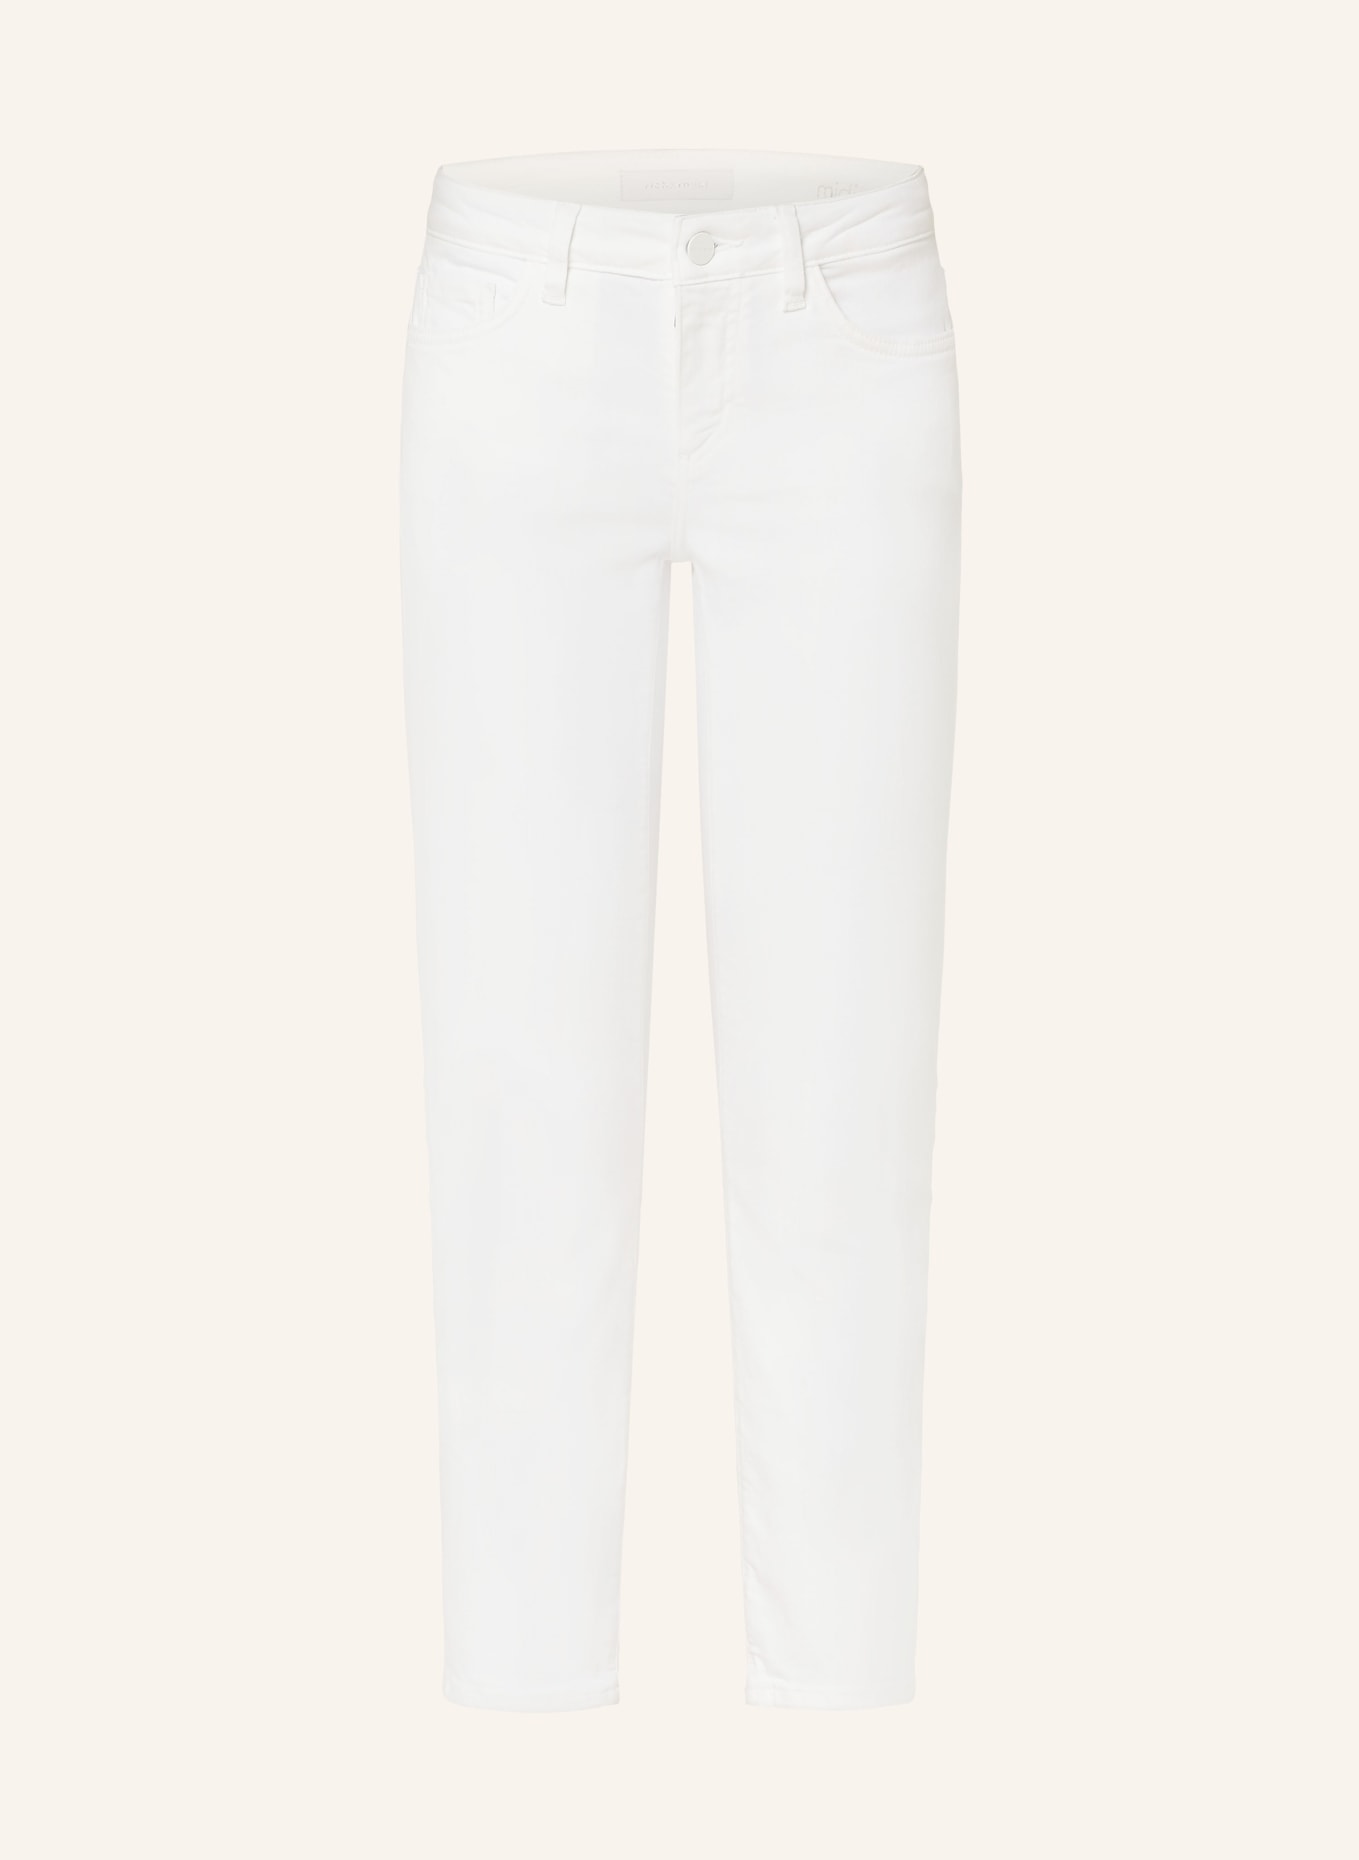 rich&royal 7/8 jeans, Color: 100 WHITE (Image 1)